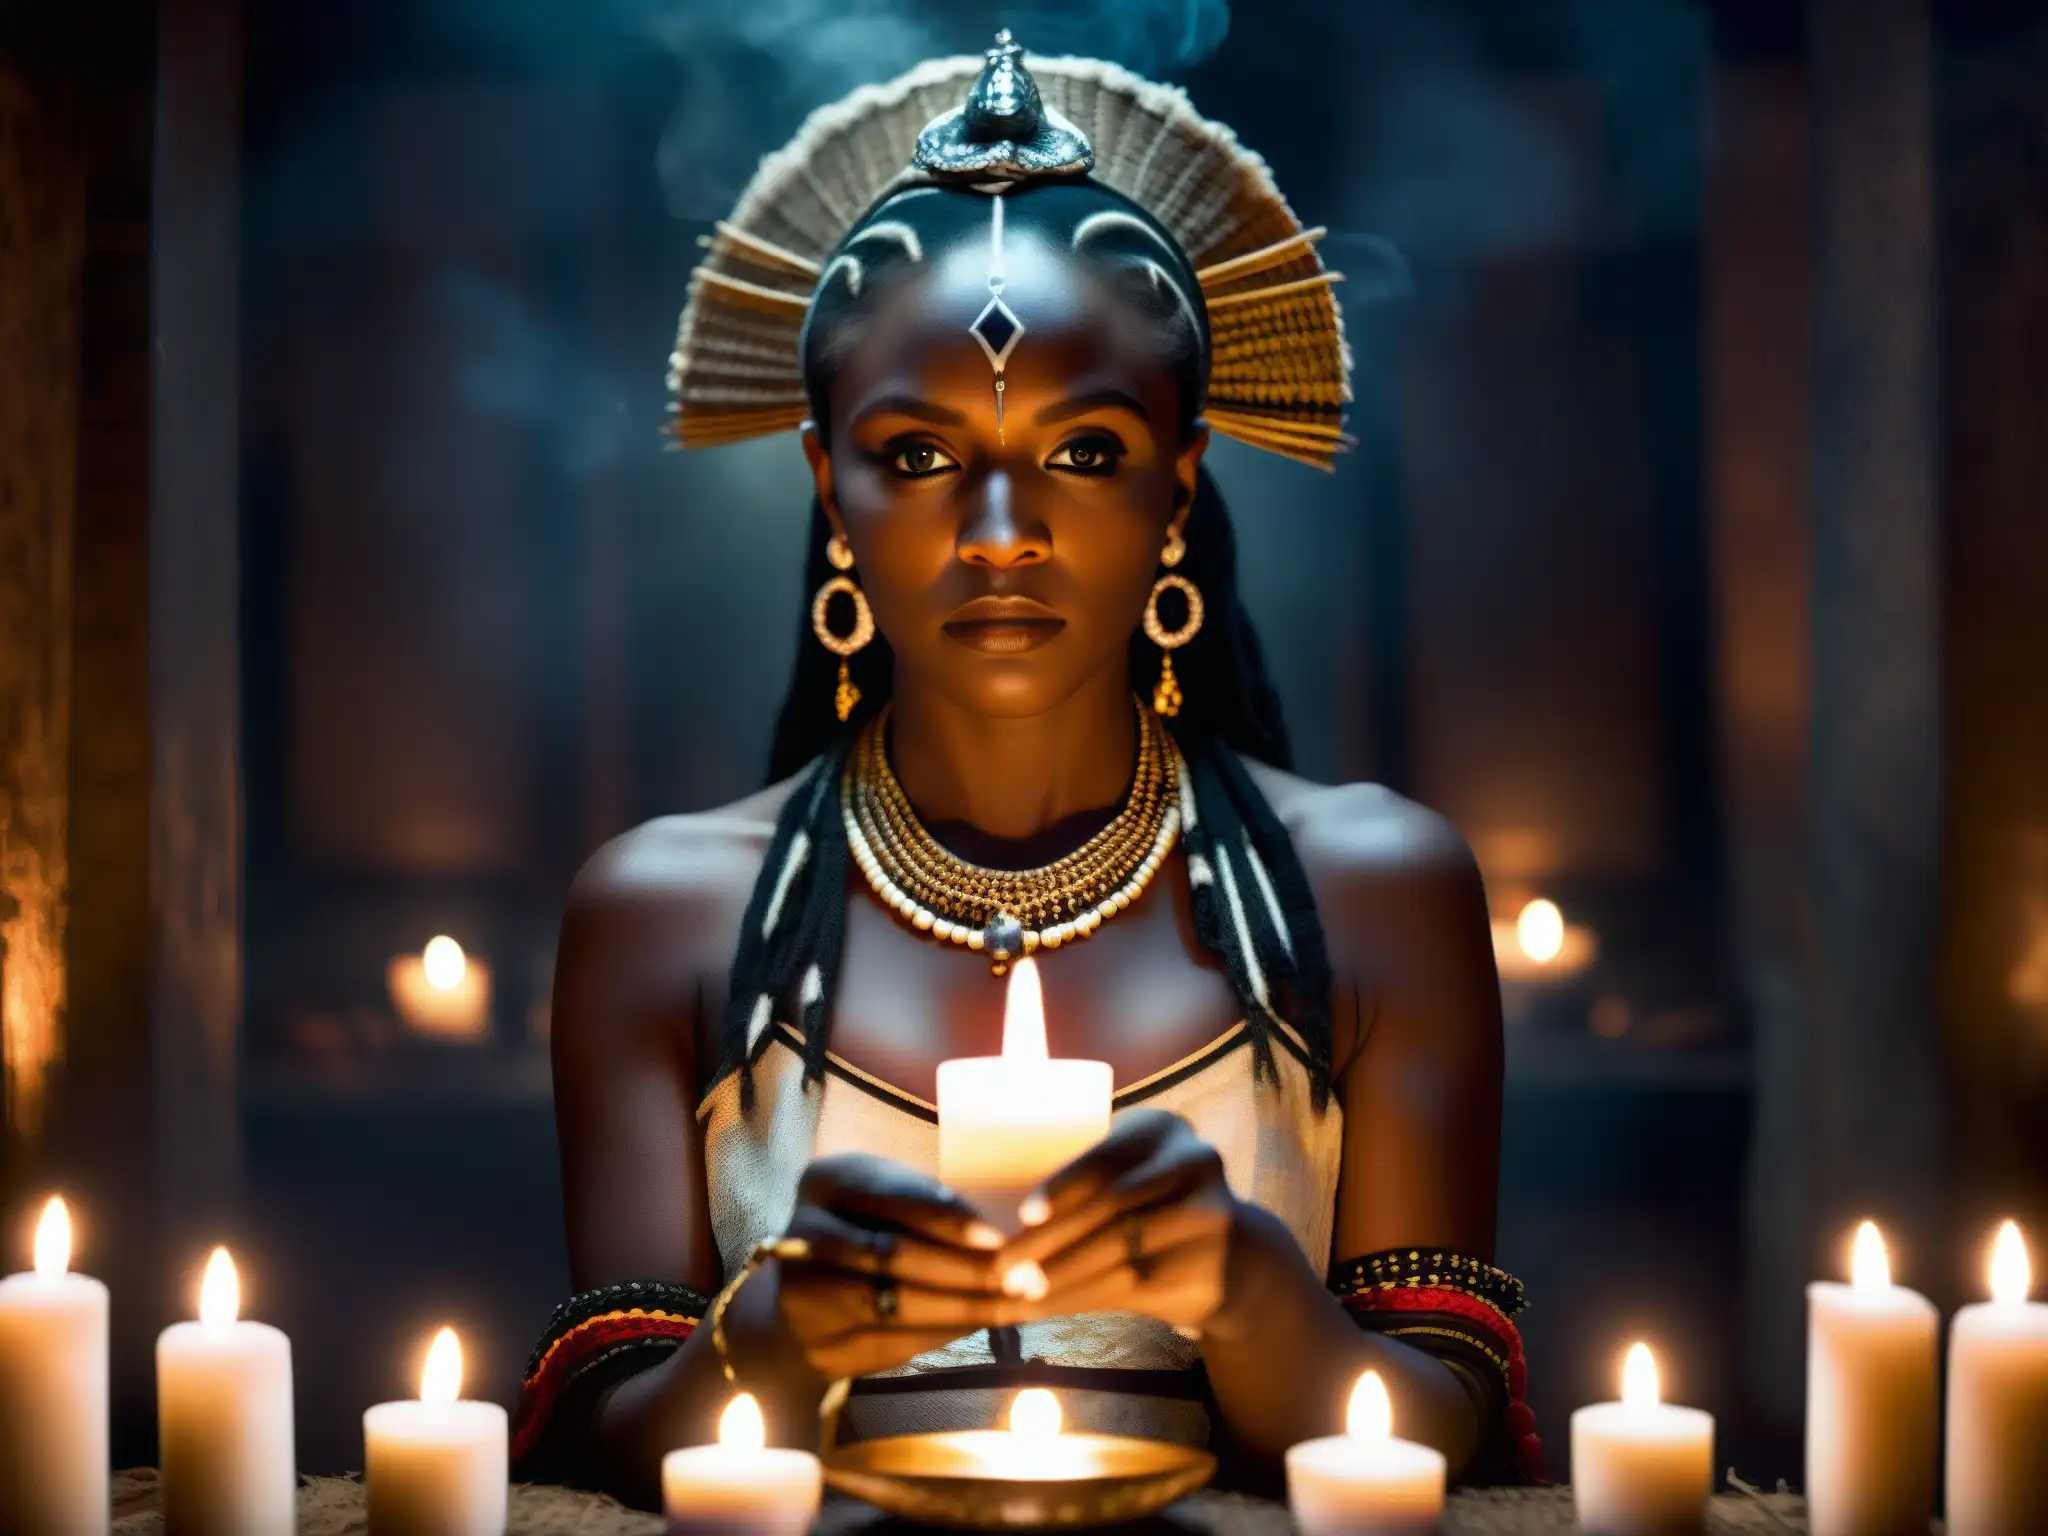 Una sacerdotisa vudú en Nueva Orleans realiza un ritual con velas, incienso y artefactos simbólicos en un ambiente misterioso y encantador